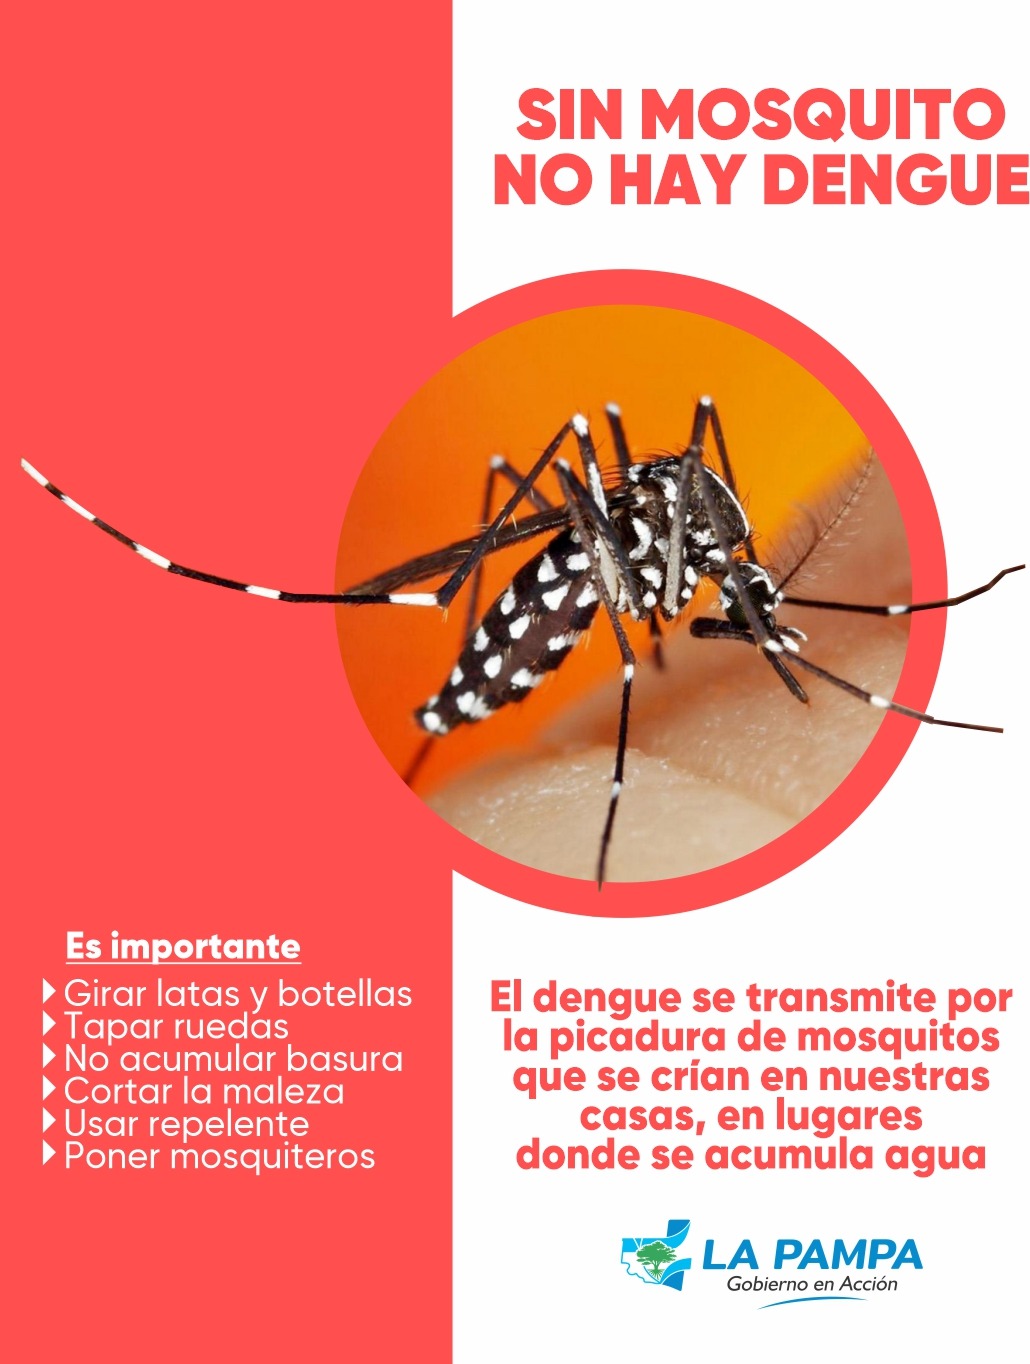 Dengue: Reiteran medidas de prevención ante el primer caso autóctono detectado en Pico